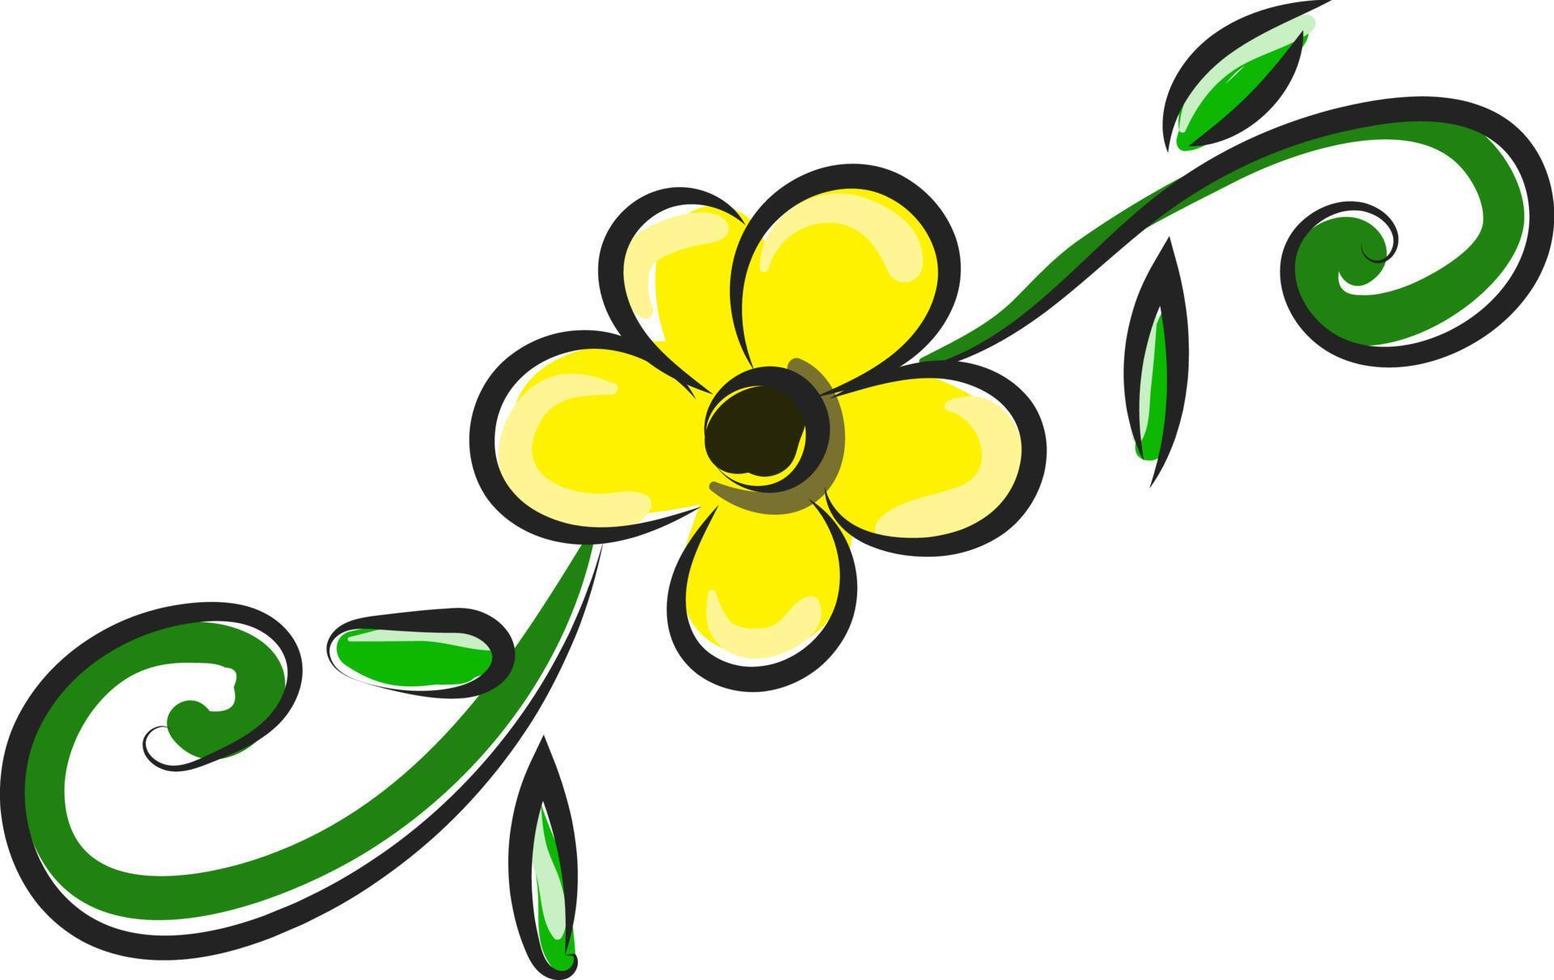 gul blomma, illustration, vektor på vit bakgrund.